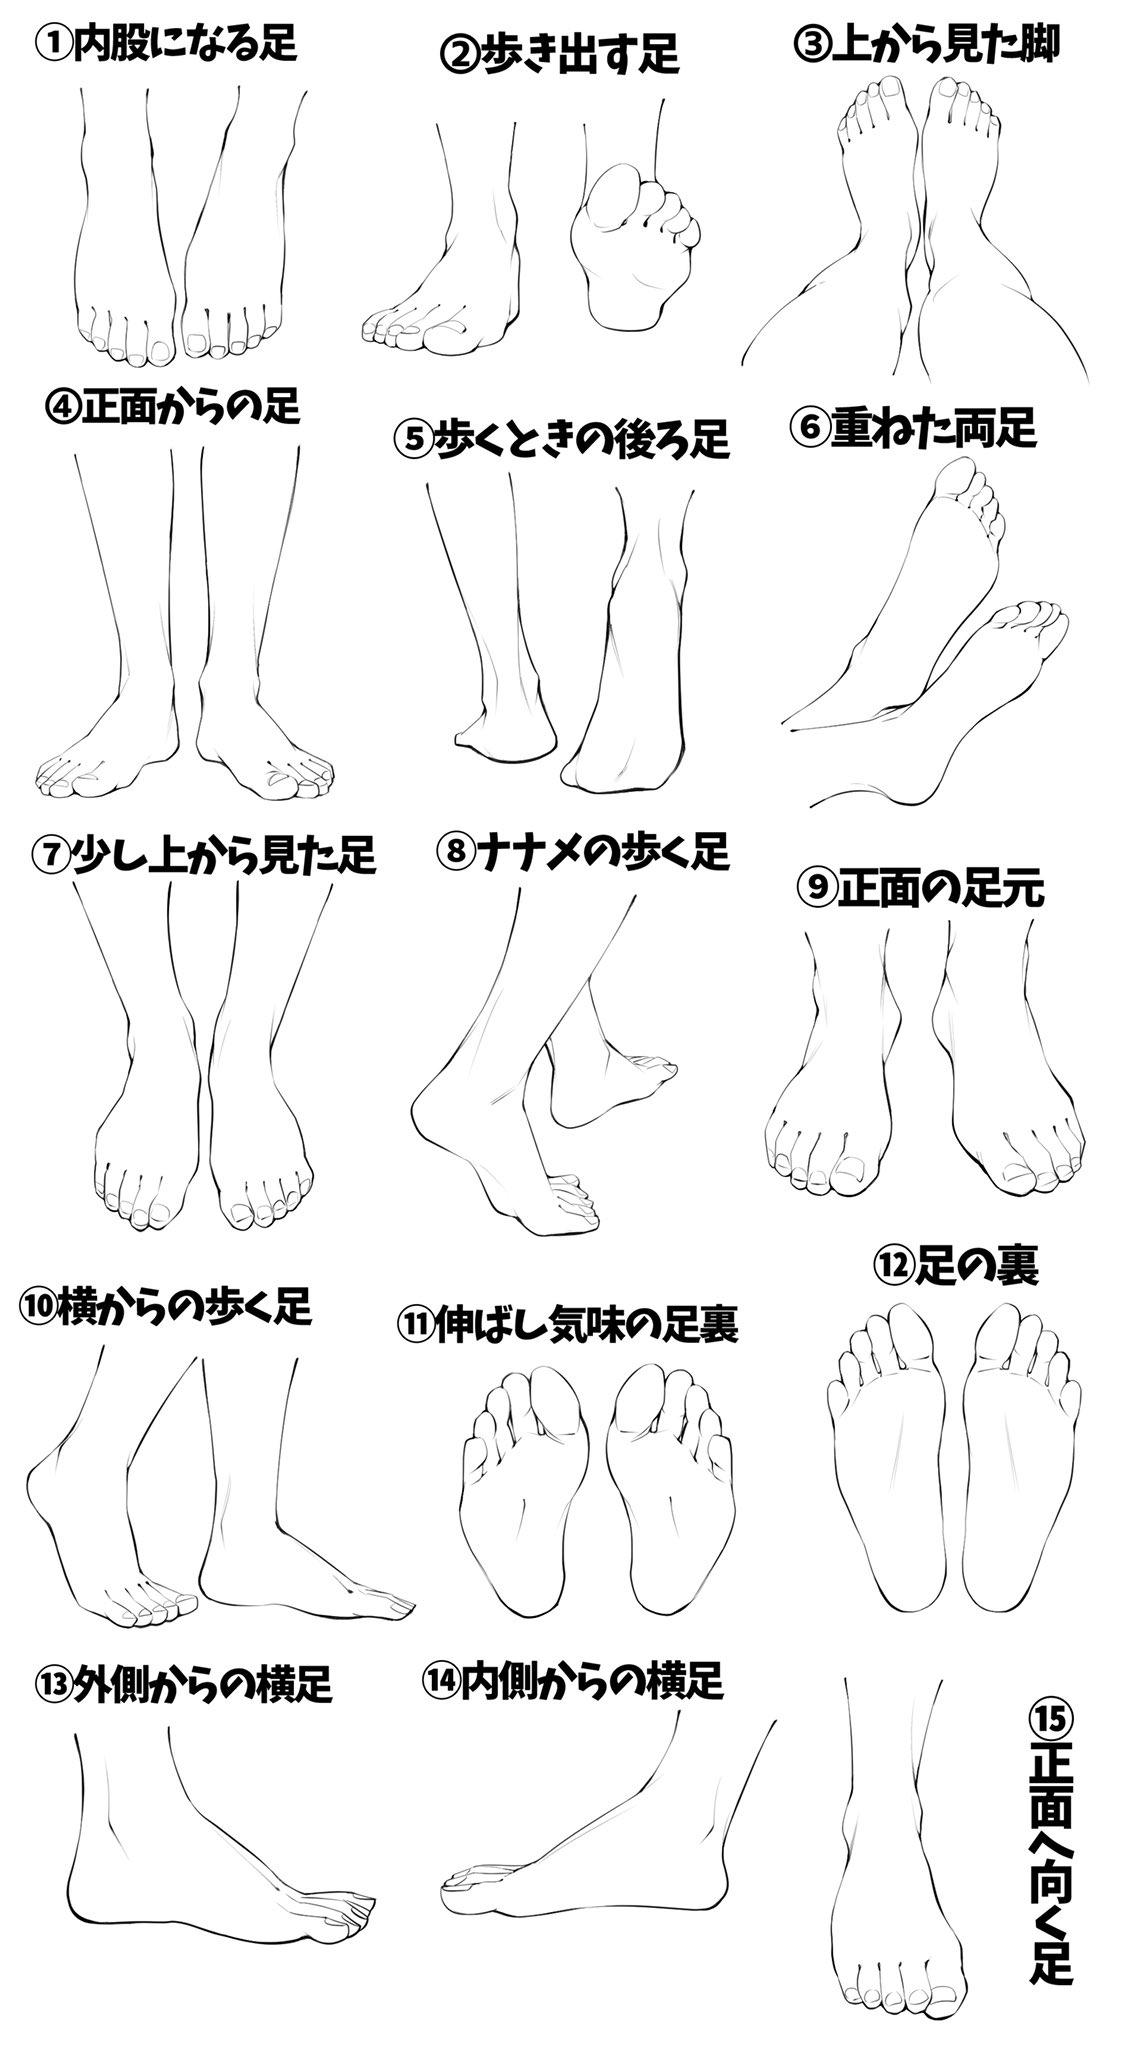 吉村拓也 イラスト講座 No Twitter 女性の足がヘタすぎる って人へ 足の線画と色塗り が上達できる 練習用 足の模写パターン表 T Co Sn5rpm9cqs Twitter